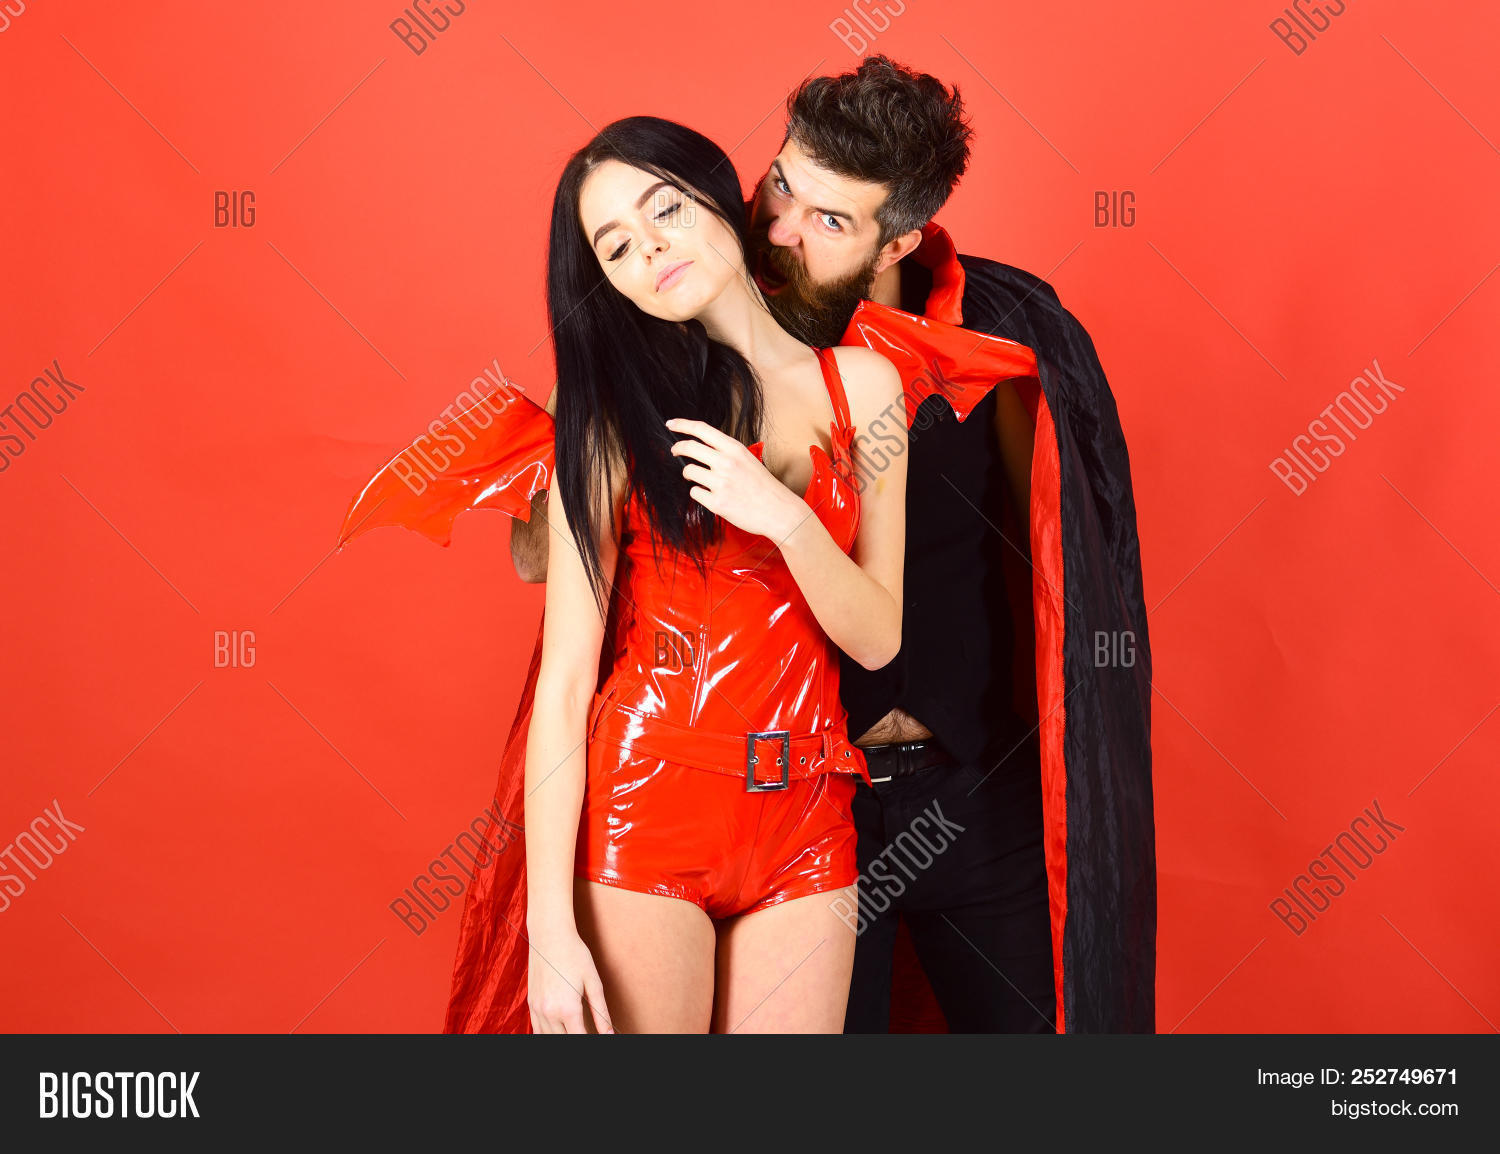 vampire bites woman neck